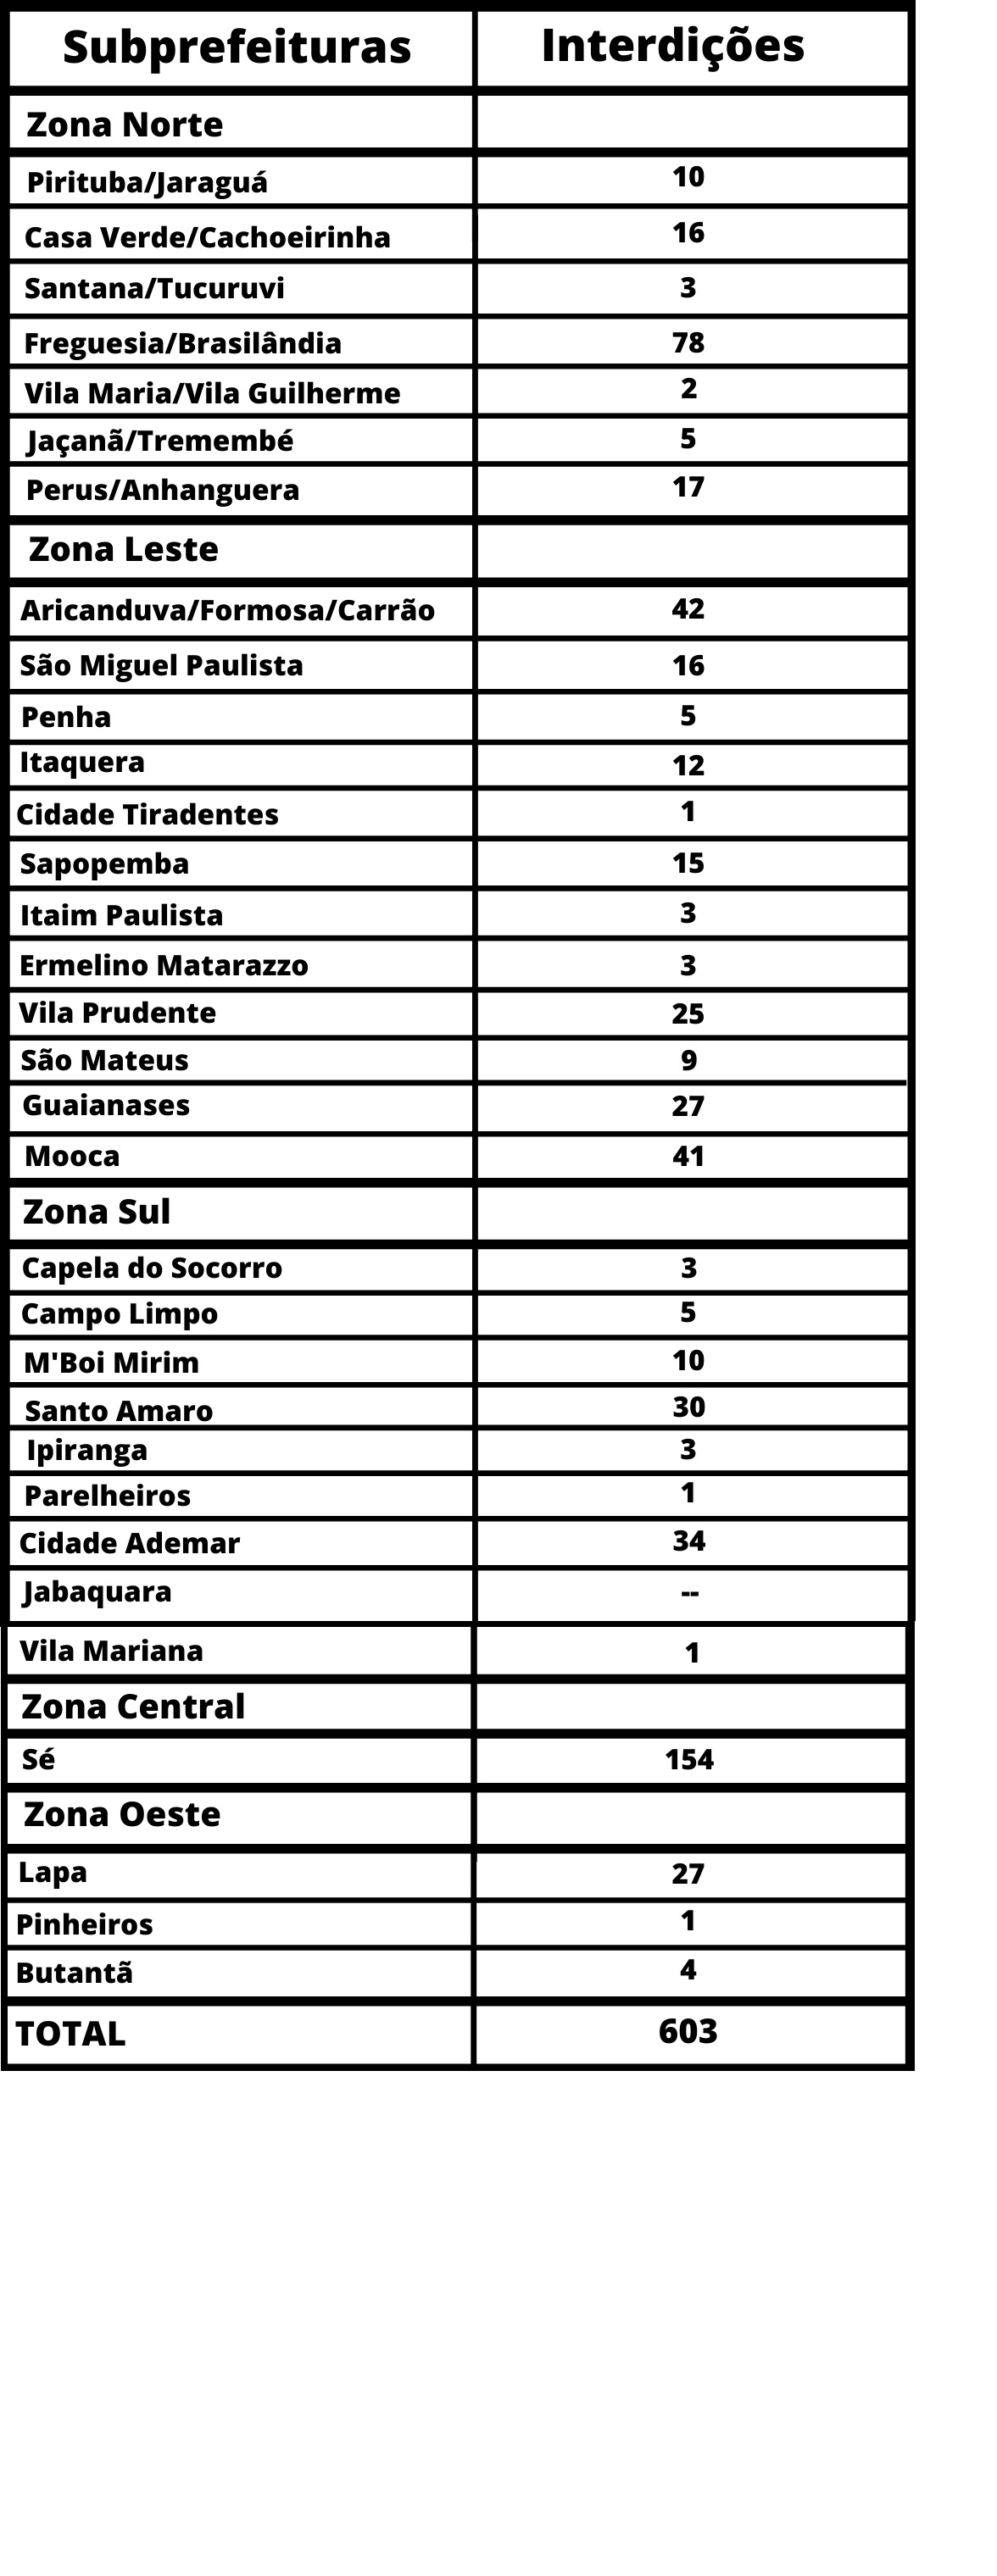 Tabela com a lista de subprefeituras e números de interdições